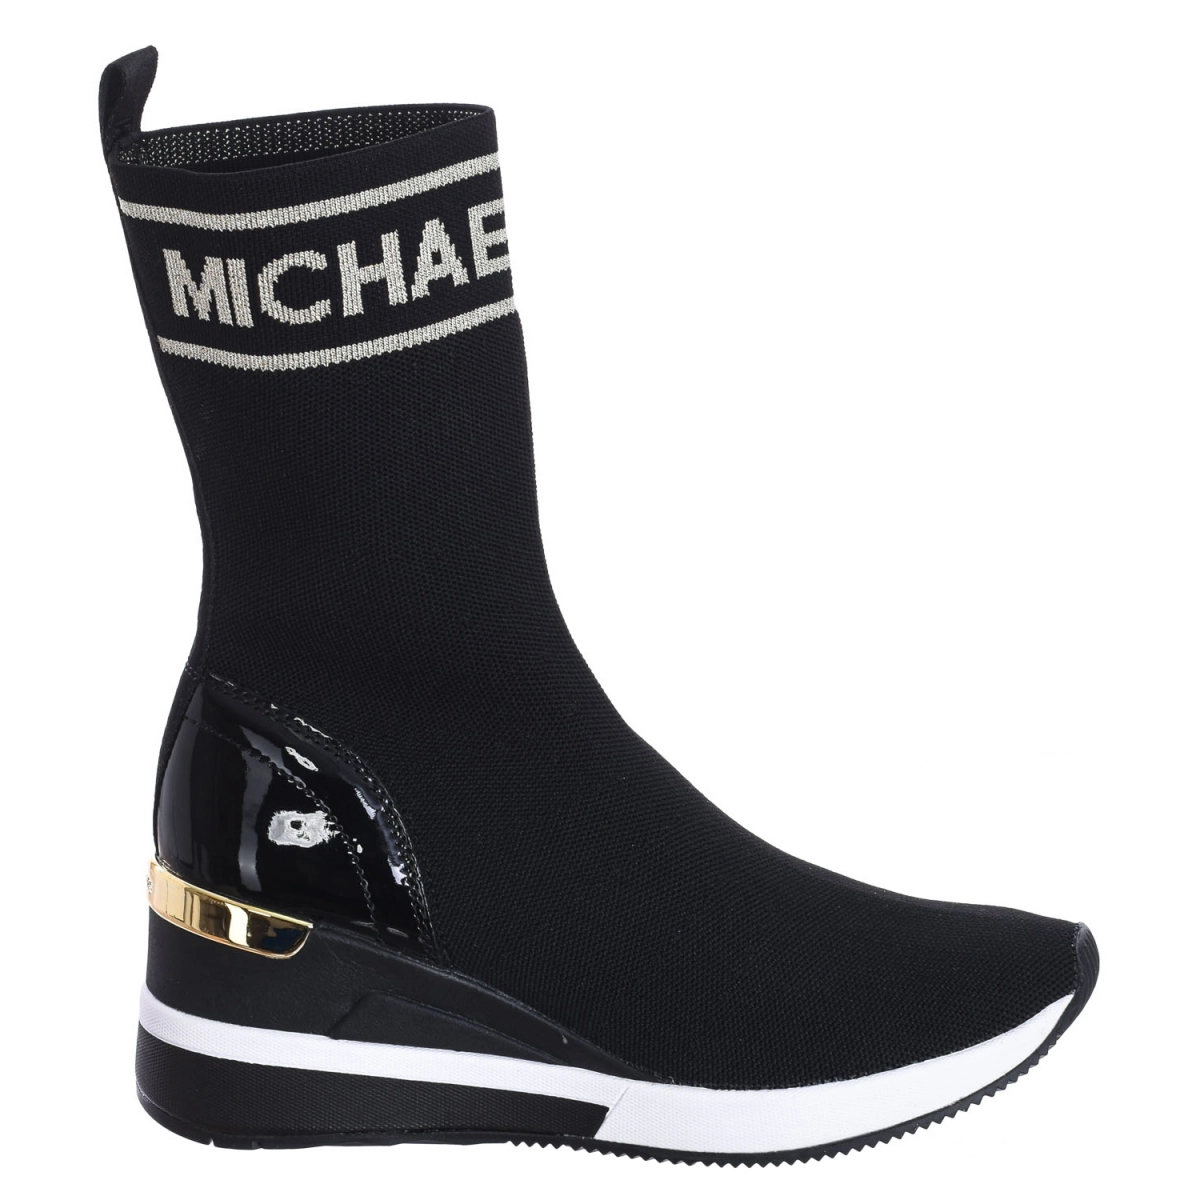 Zapatilla Sneaker Skyler tipo calcetín de punto elástico Michael Kors F2SKFE5D mujer Talla: 40.5 Color: Negro F2SKFE5D-BLK-PALEGOLD.40.5